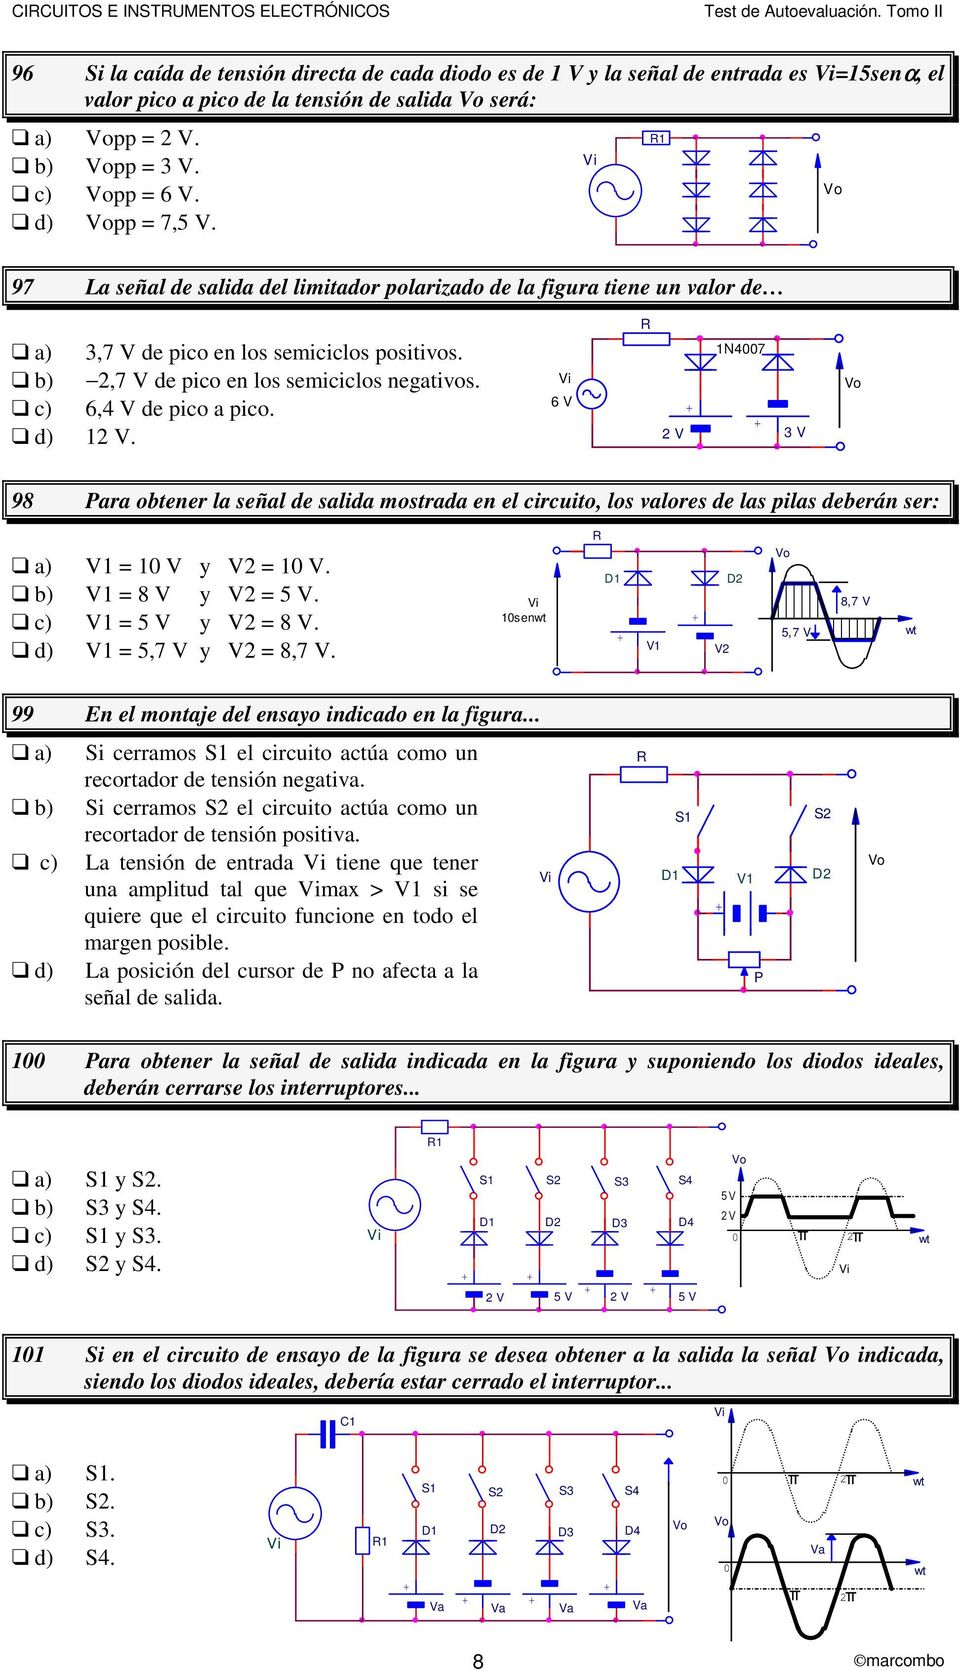 1 97 La señal de salida del limitador polarizado de la figura tiene un valor de 3,7 V de pico en los semiciclos positivos.,7 V de pico en los semiciclos negativos. 6,4 V de pico a pico. 1 V.